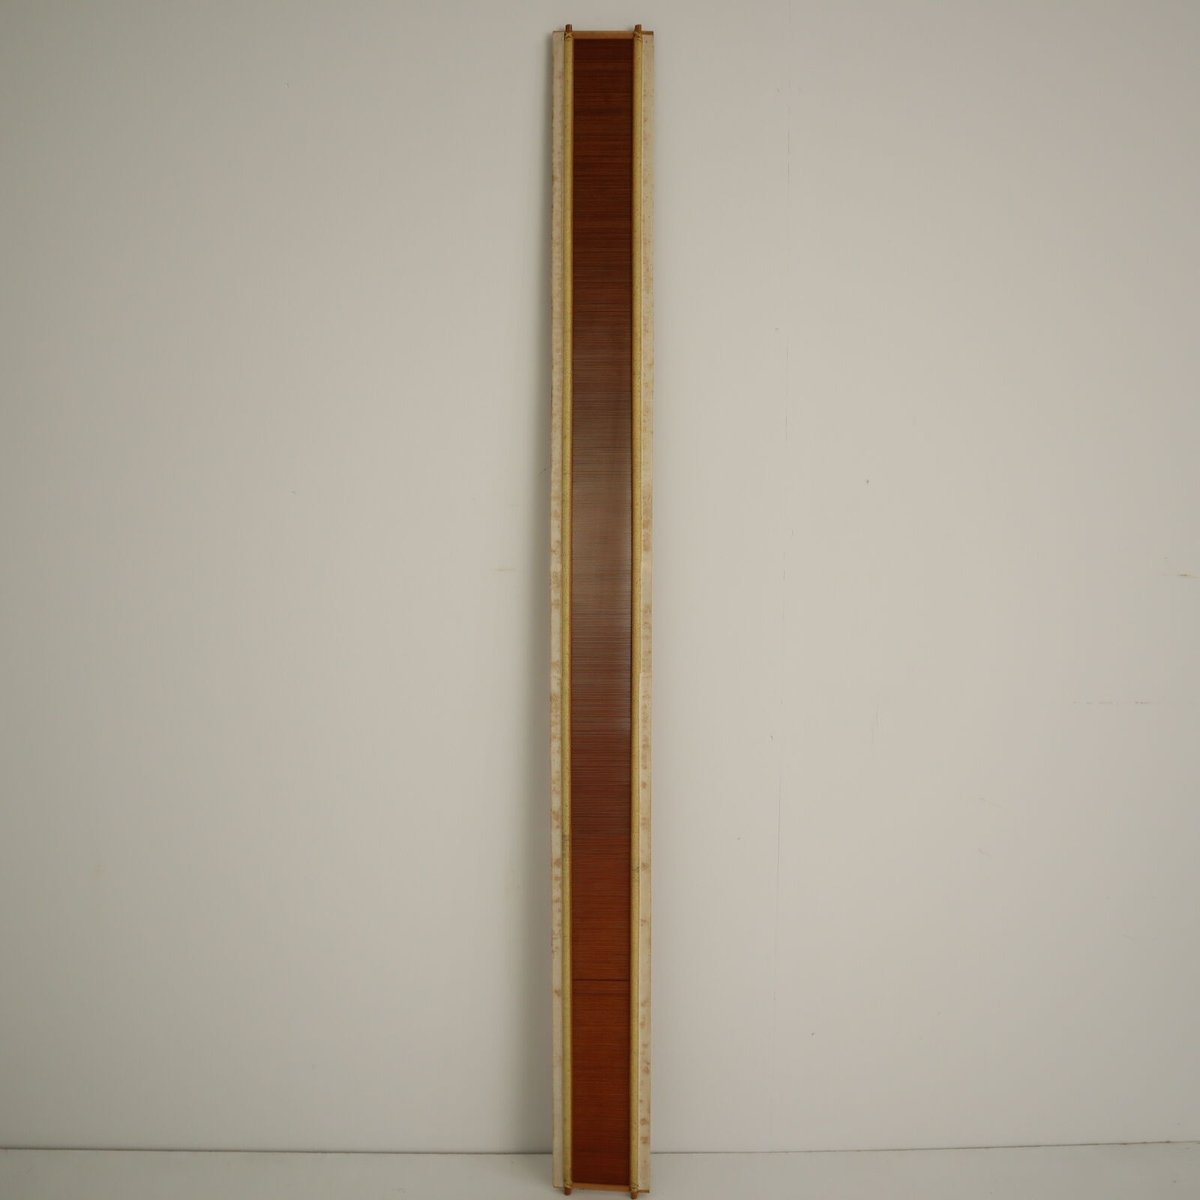 【W073】竹筬 10cm間70羽 内寸105.2cm